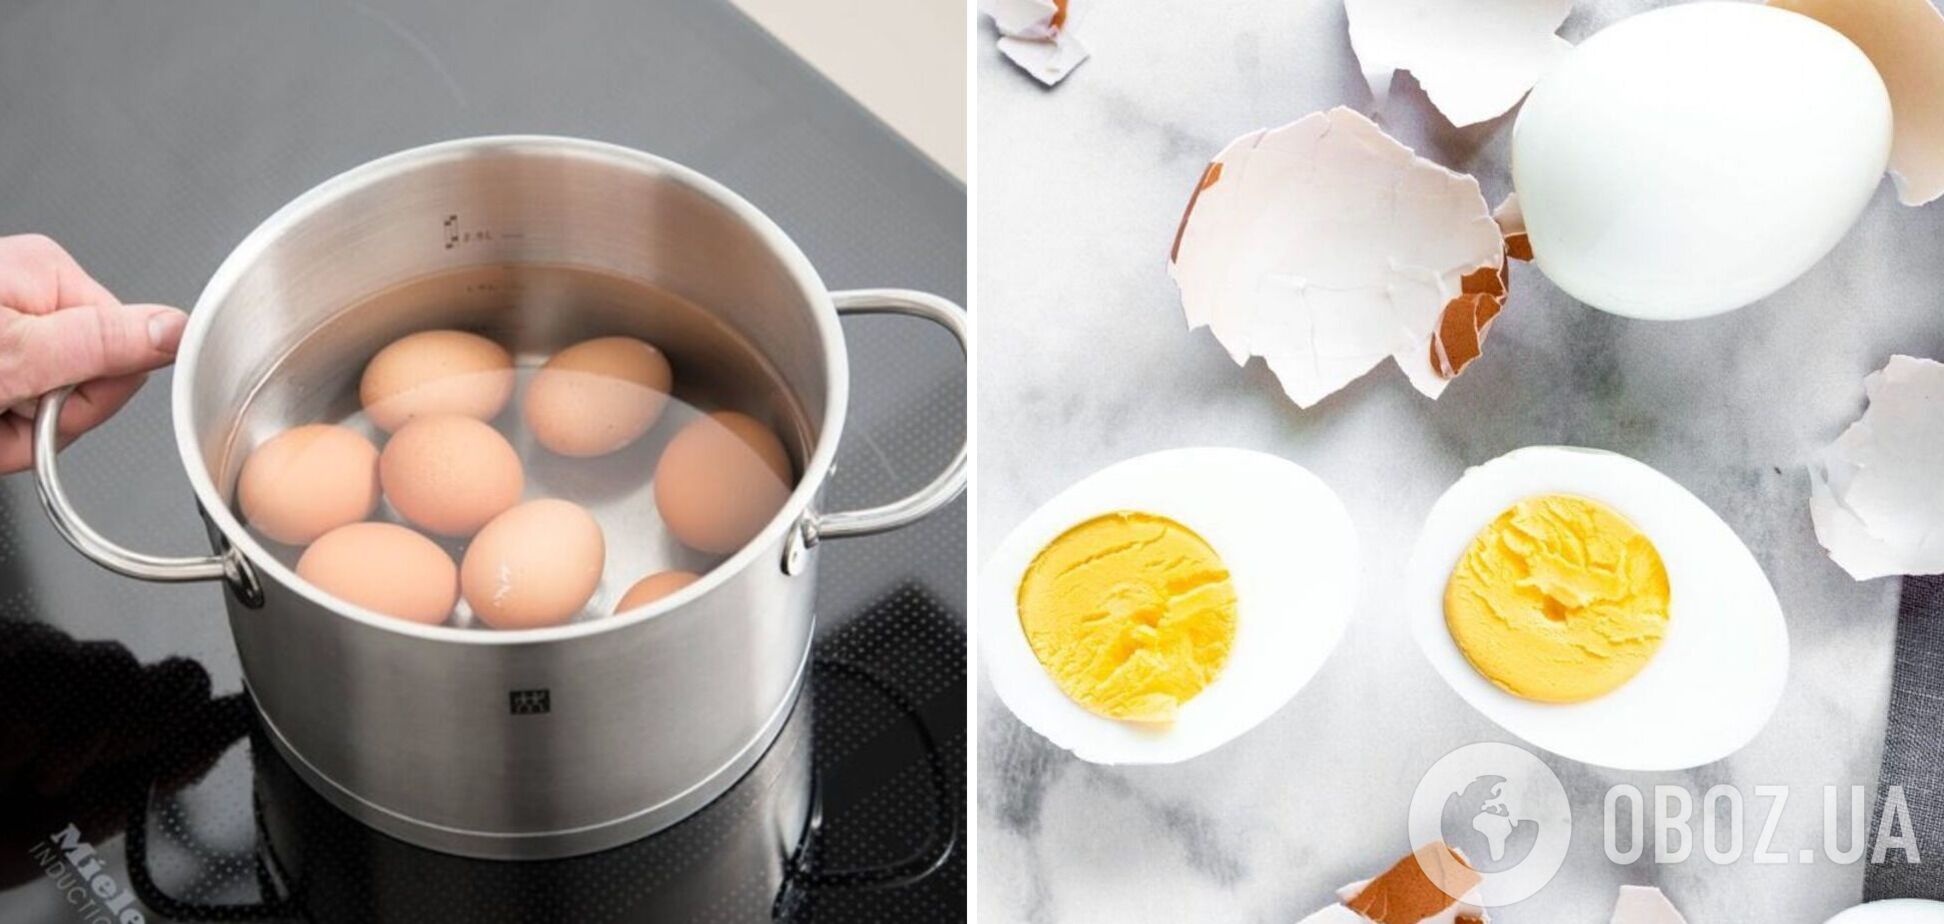 Як правильно зварити яйця для новорічних салатів: ділимось порадами